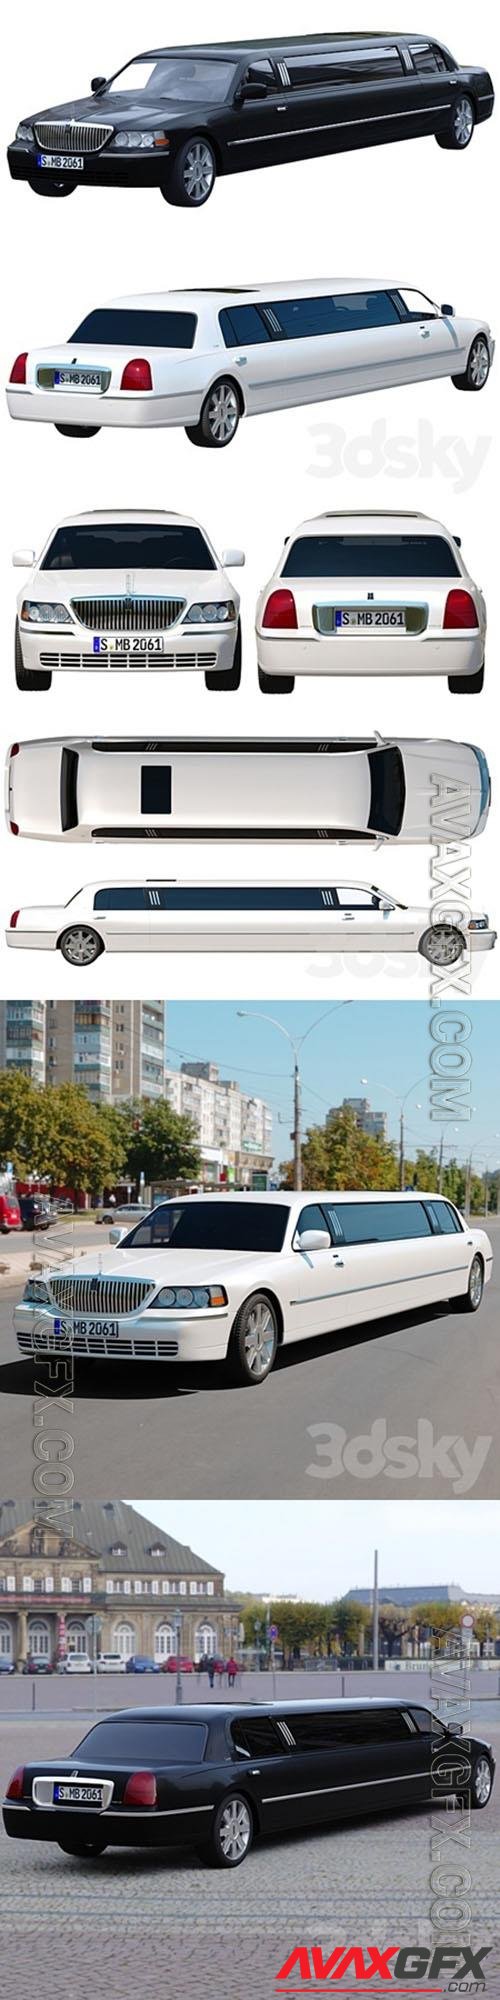 Lincoln Town Car limousine 3D Model